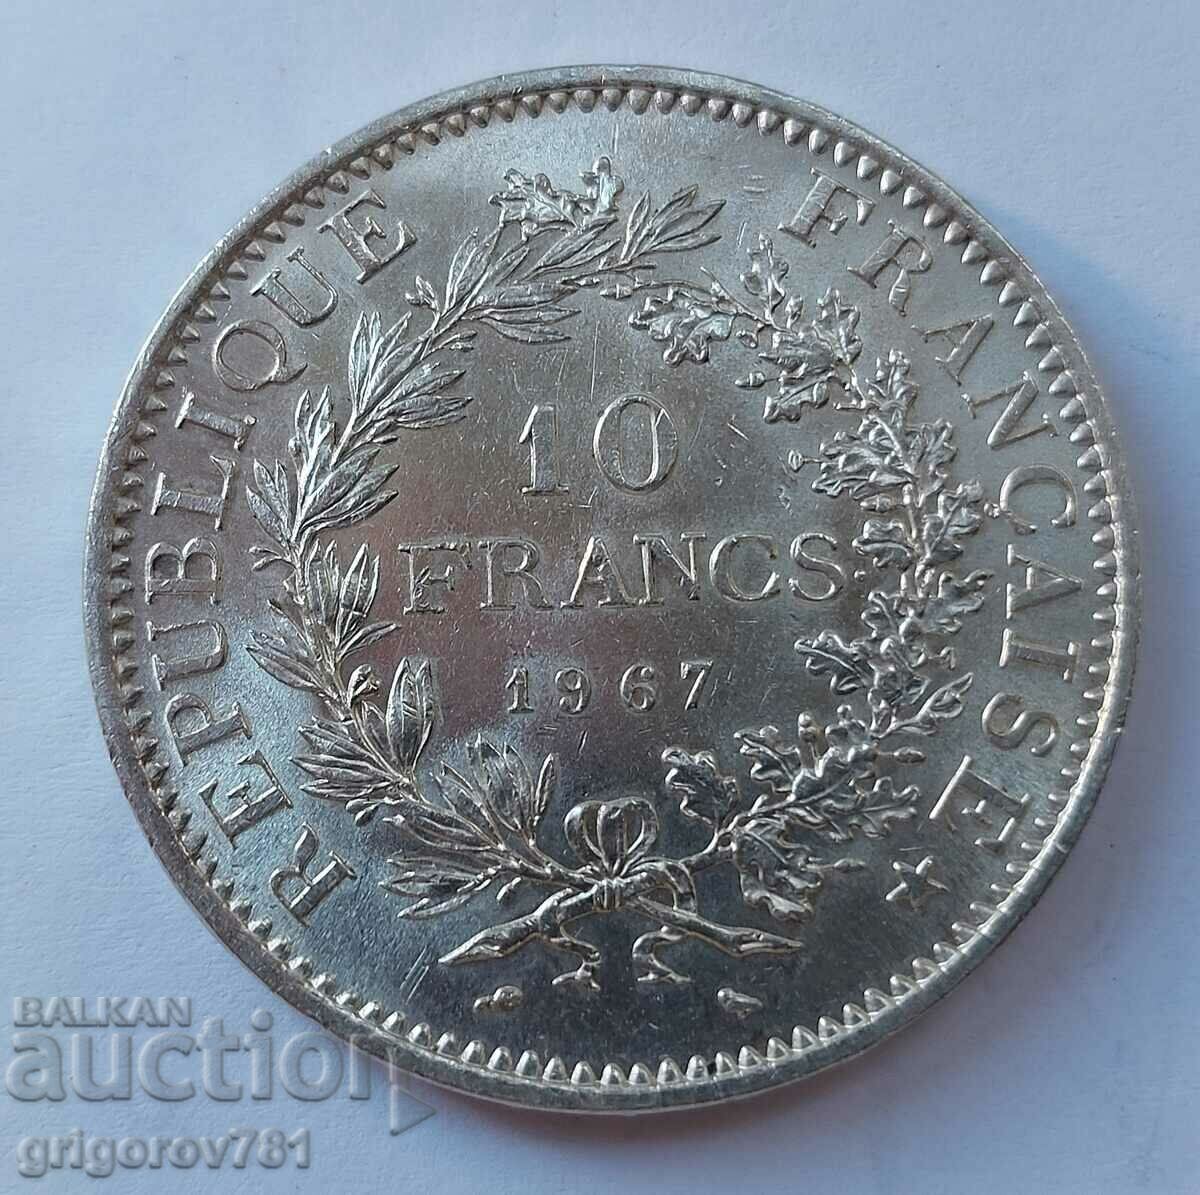 Ασημένιο 10 φράγκα Γαλλία 1967 - ασημένιο νόμισμα # 17